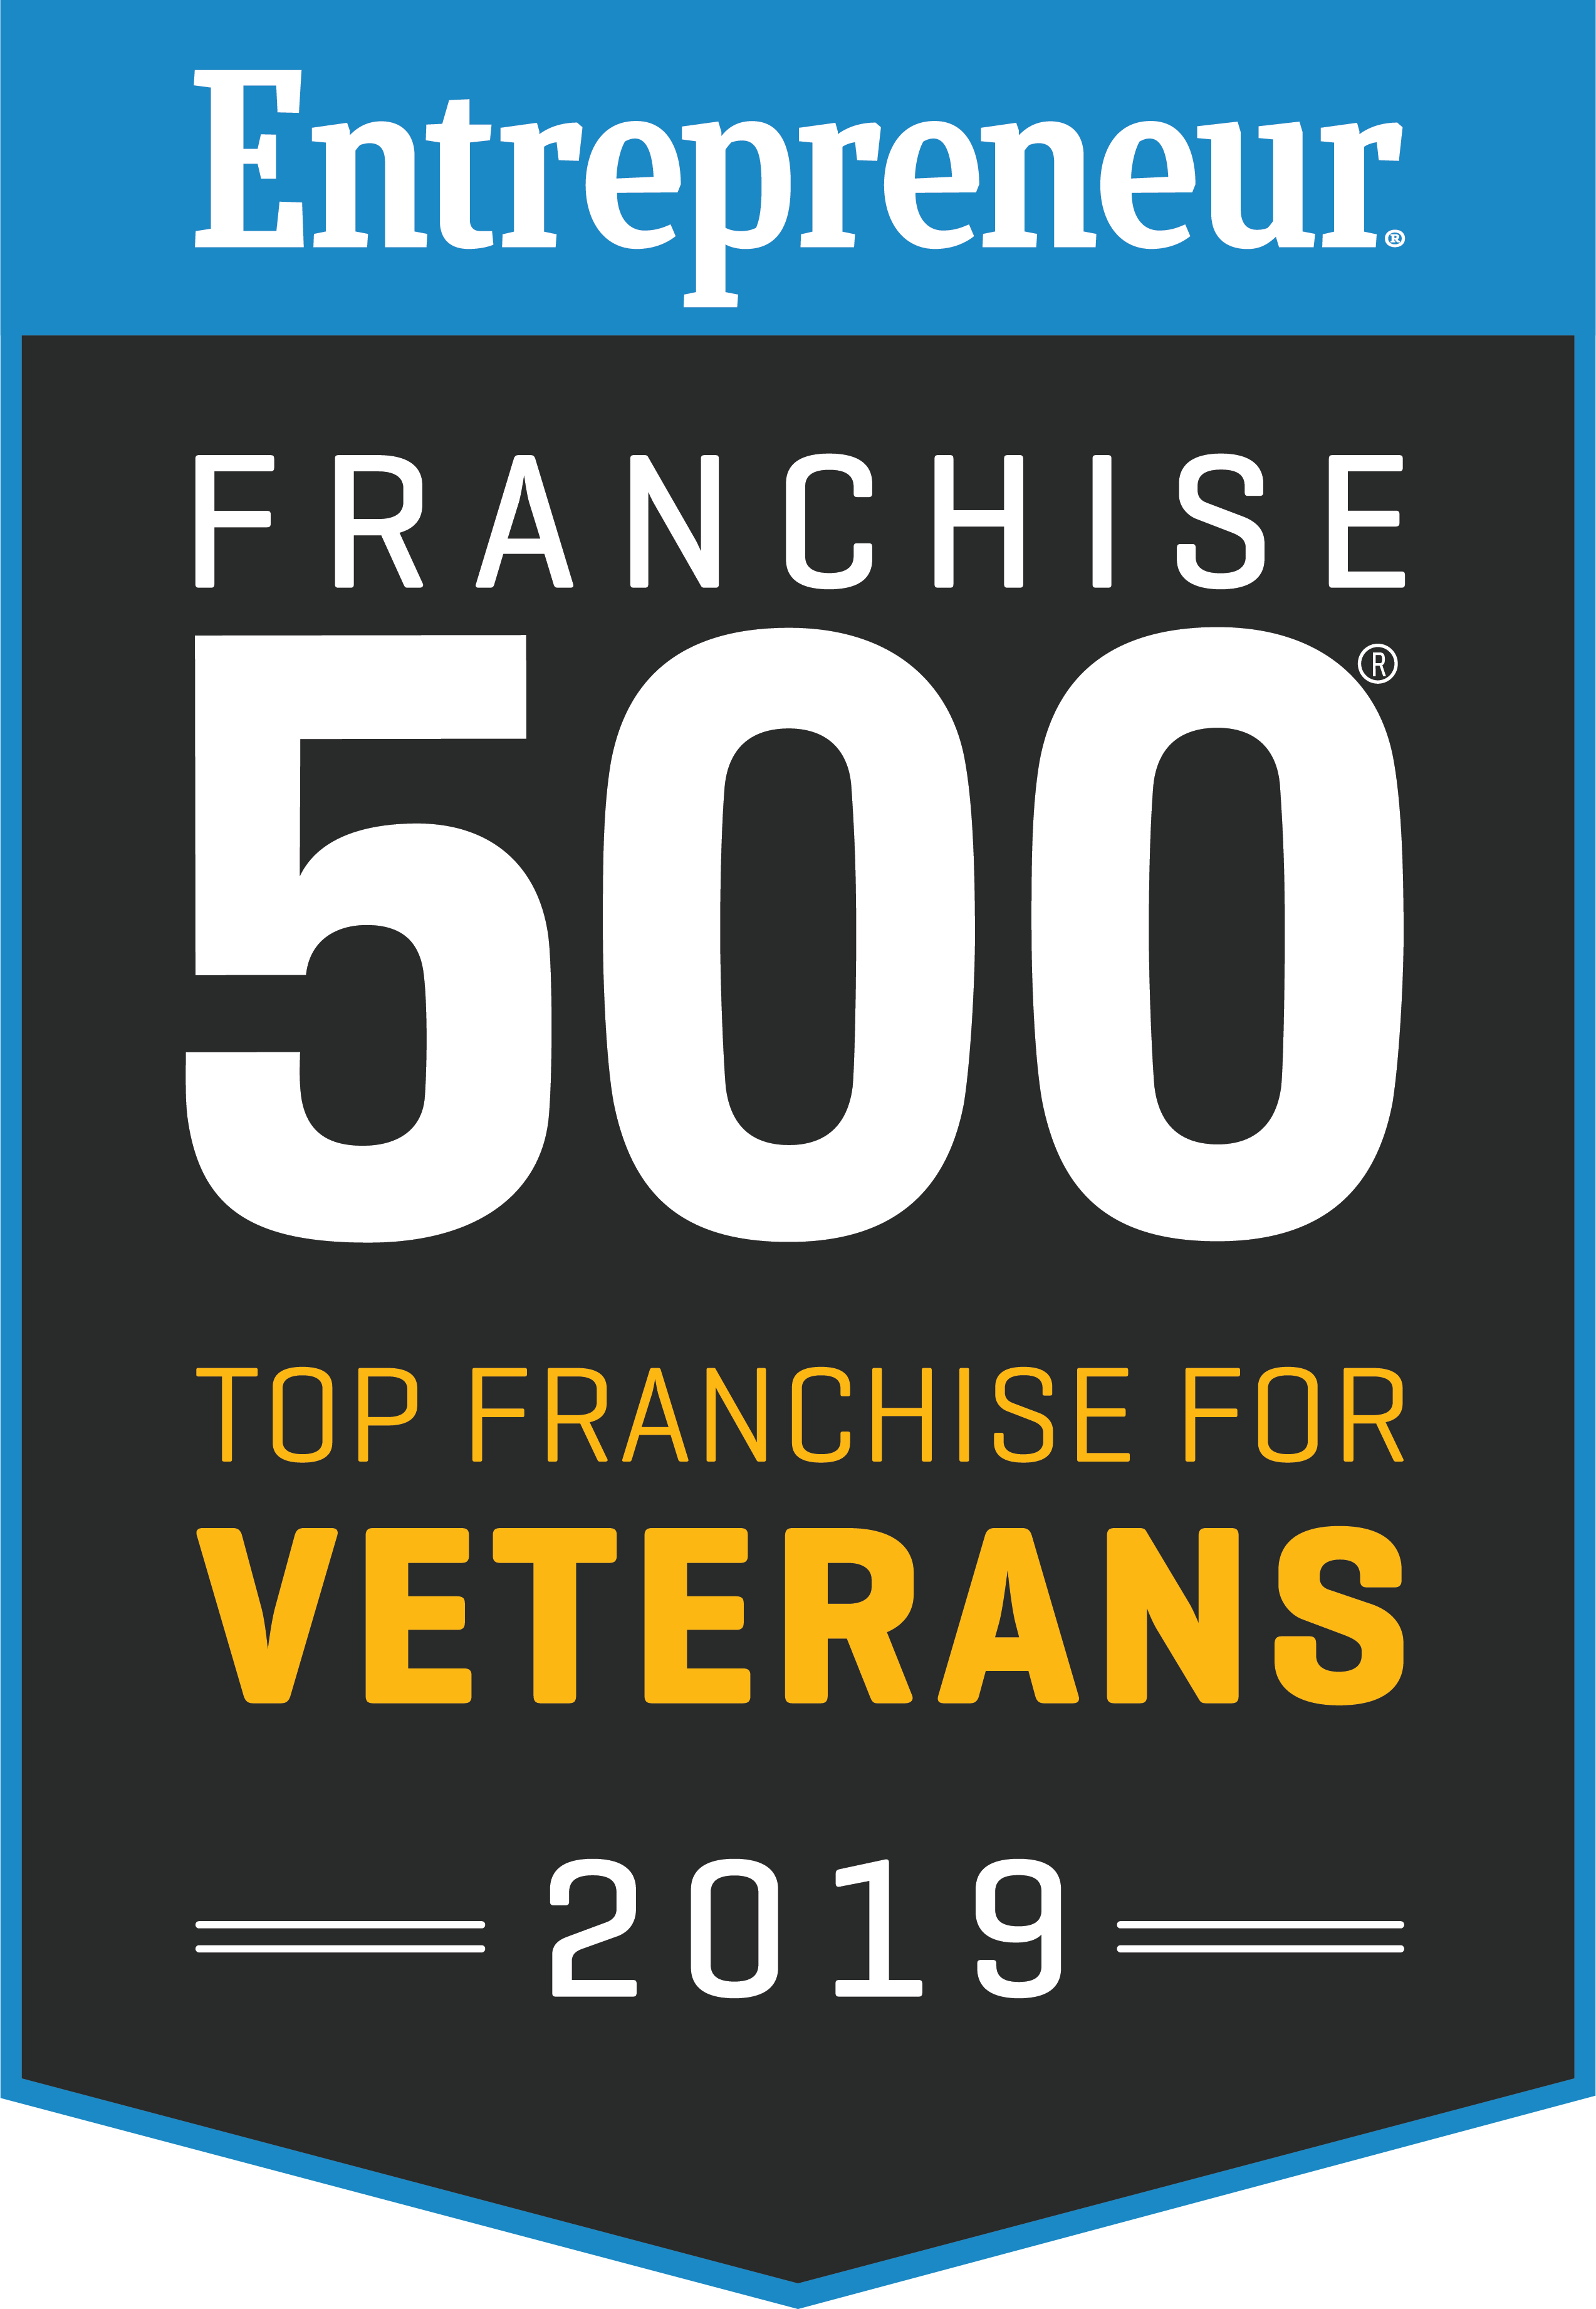 Entrepreneur ranked top franchise for Veterans in 2019 logo